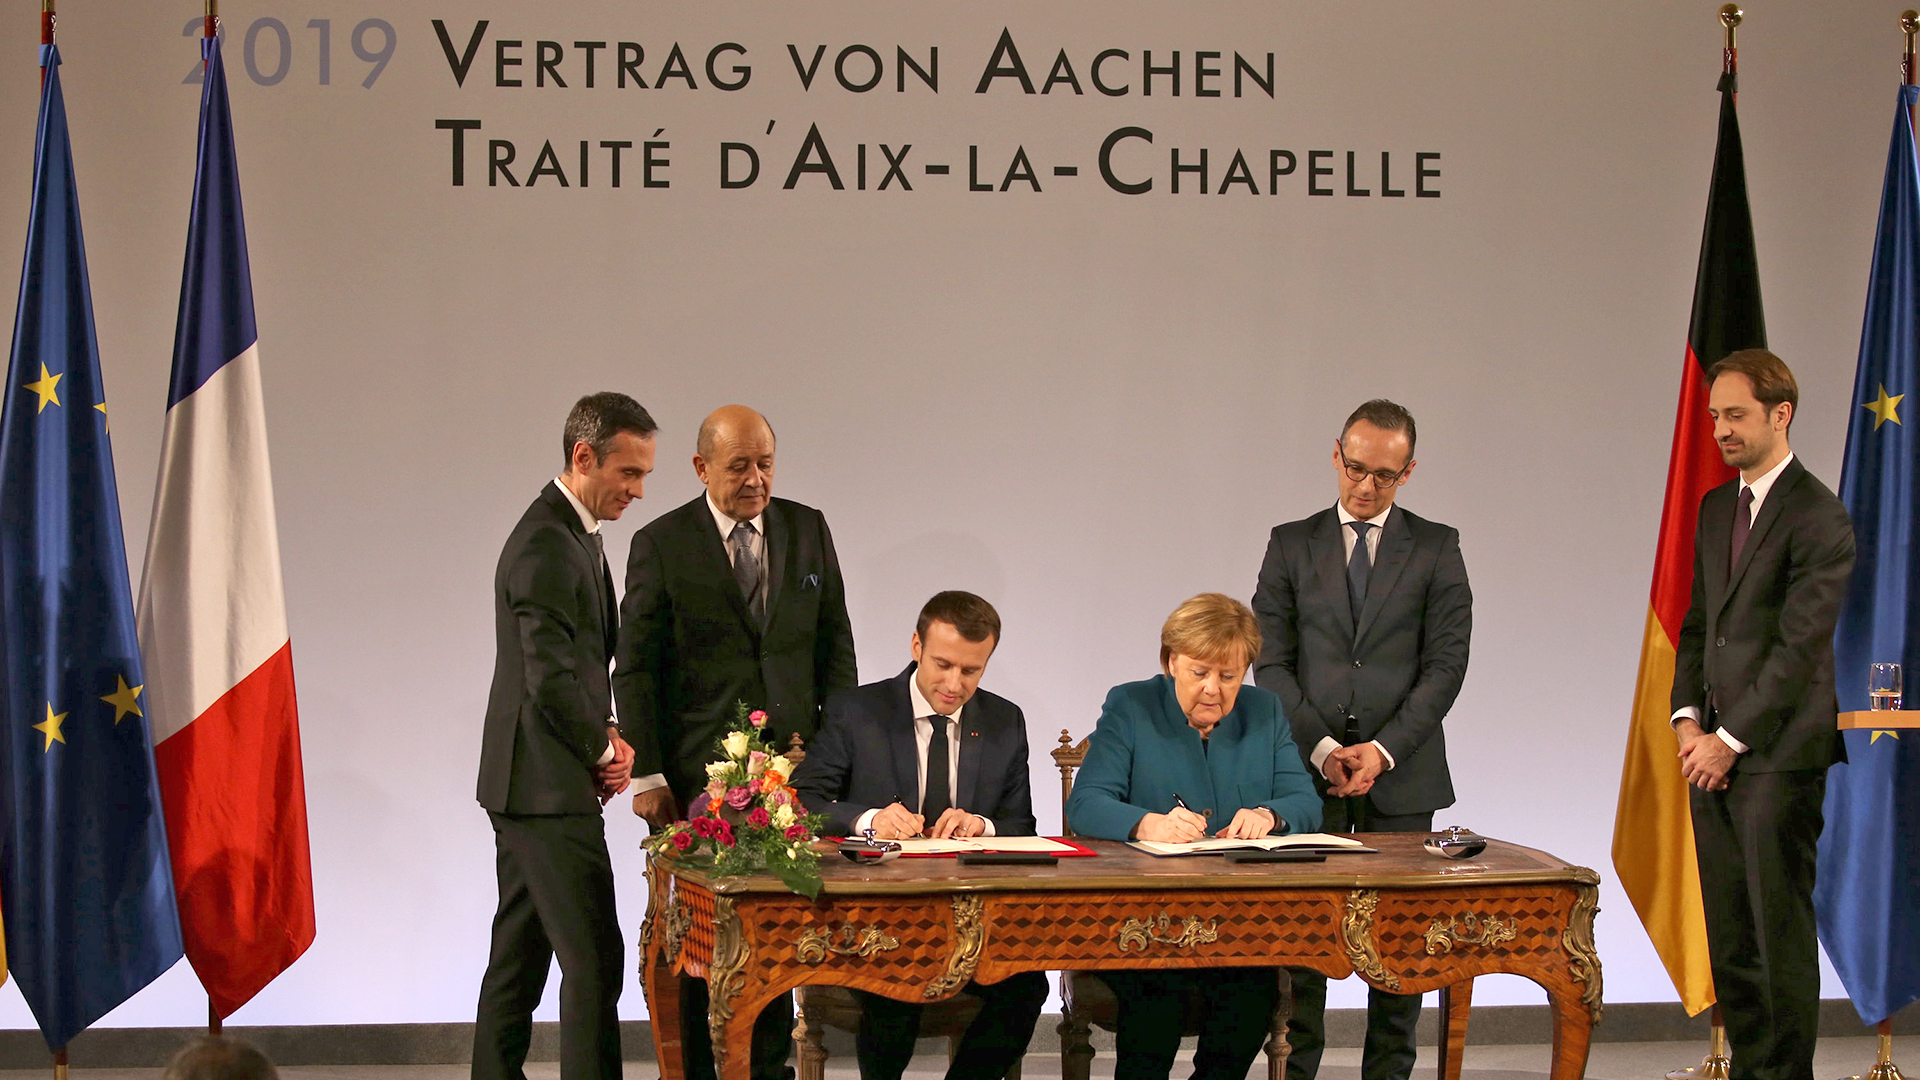  Emmanuel Macron und Angela Merkel unterzeichnen Aachener Vertrag | dpa